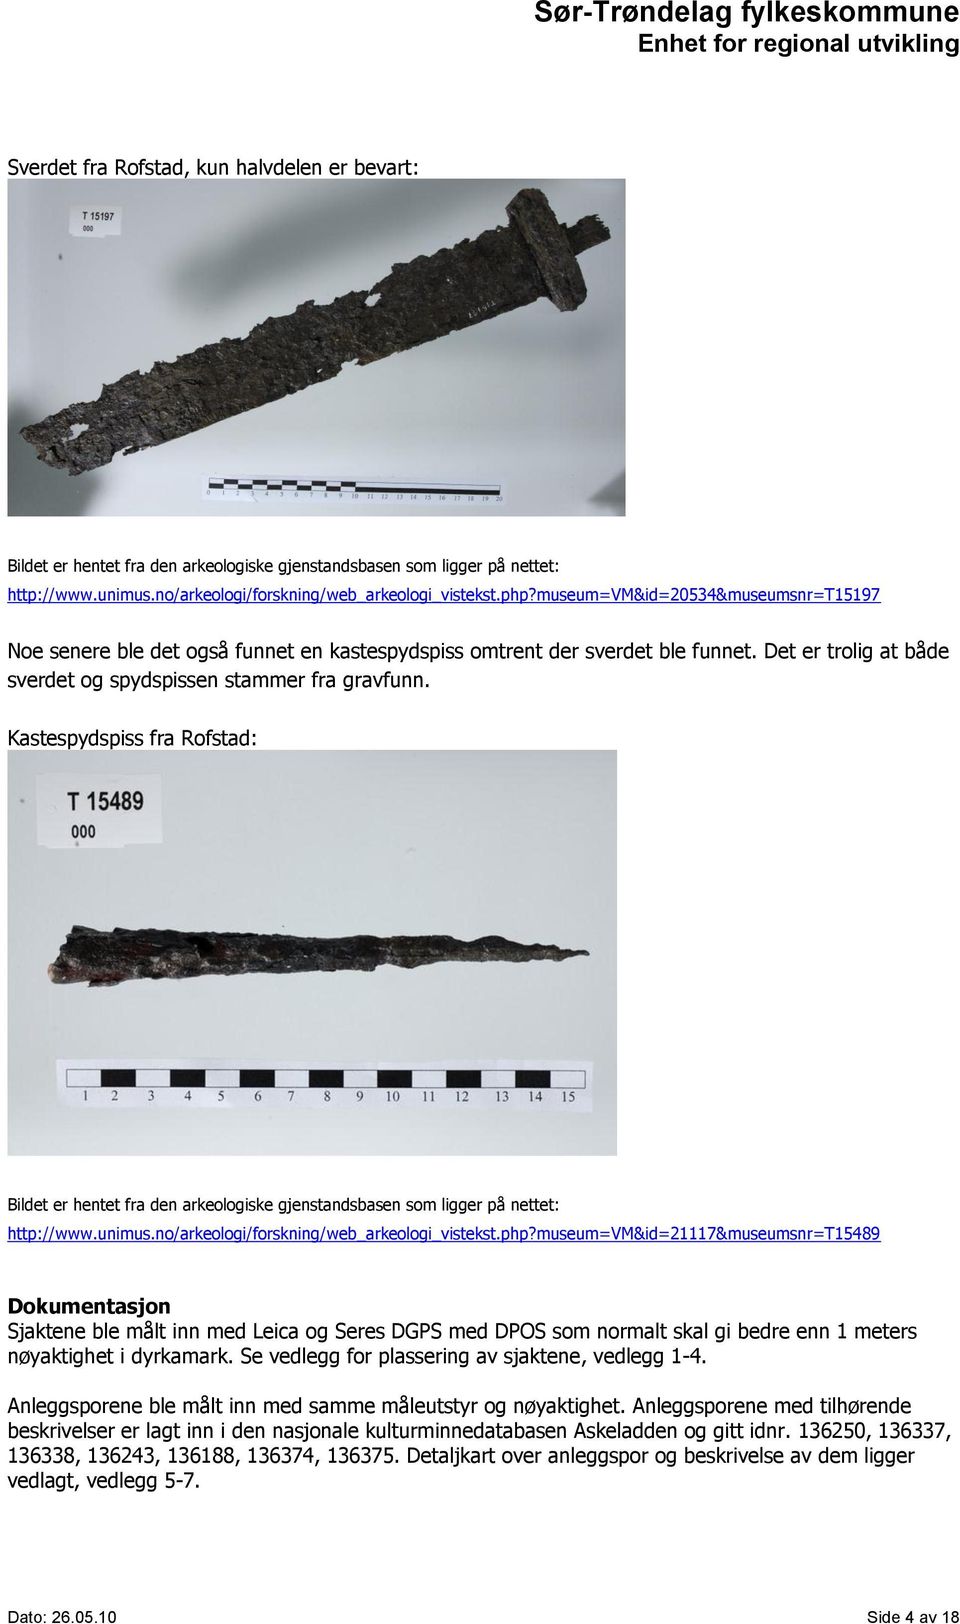 Kastespydspiss fra Rofstad: Bildet er hentet fra den arkeologiske gjenstandsbasen som ligger på nettet: http://www.unimus.no/arkeologi/forskning/web_arkeologi_vistekst.php?